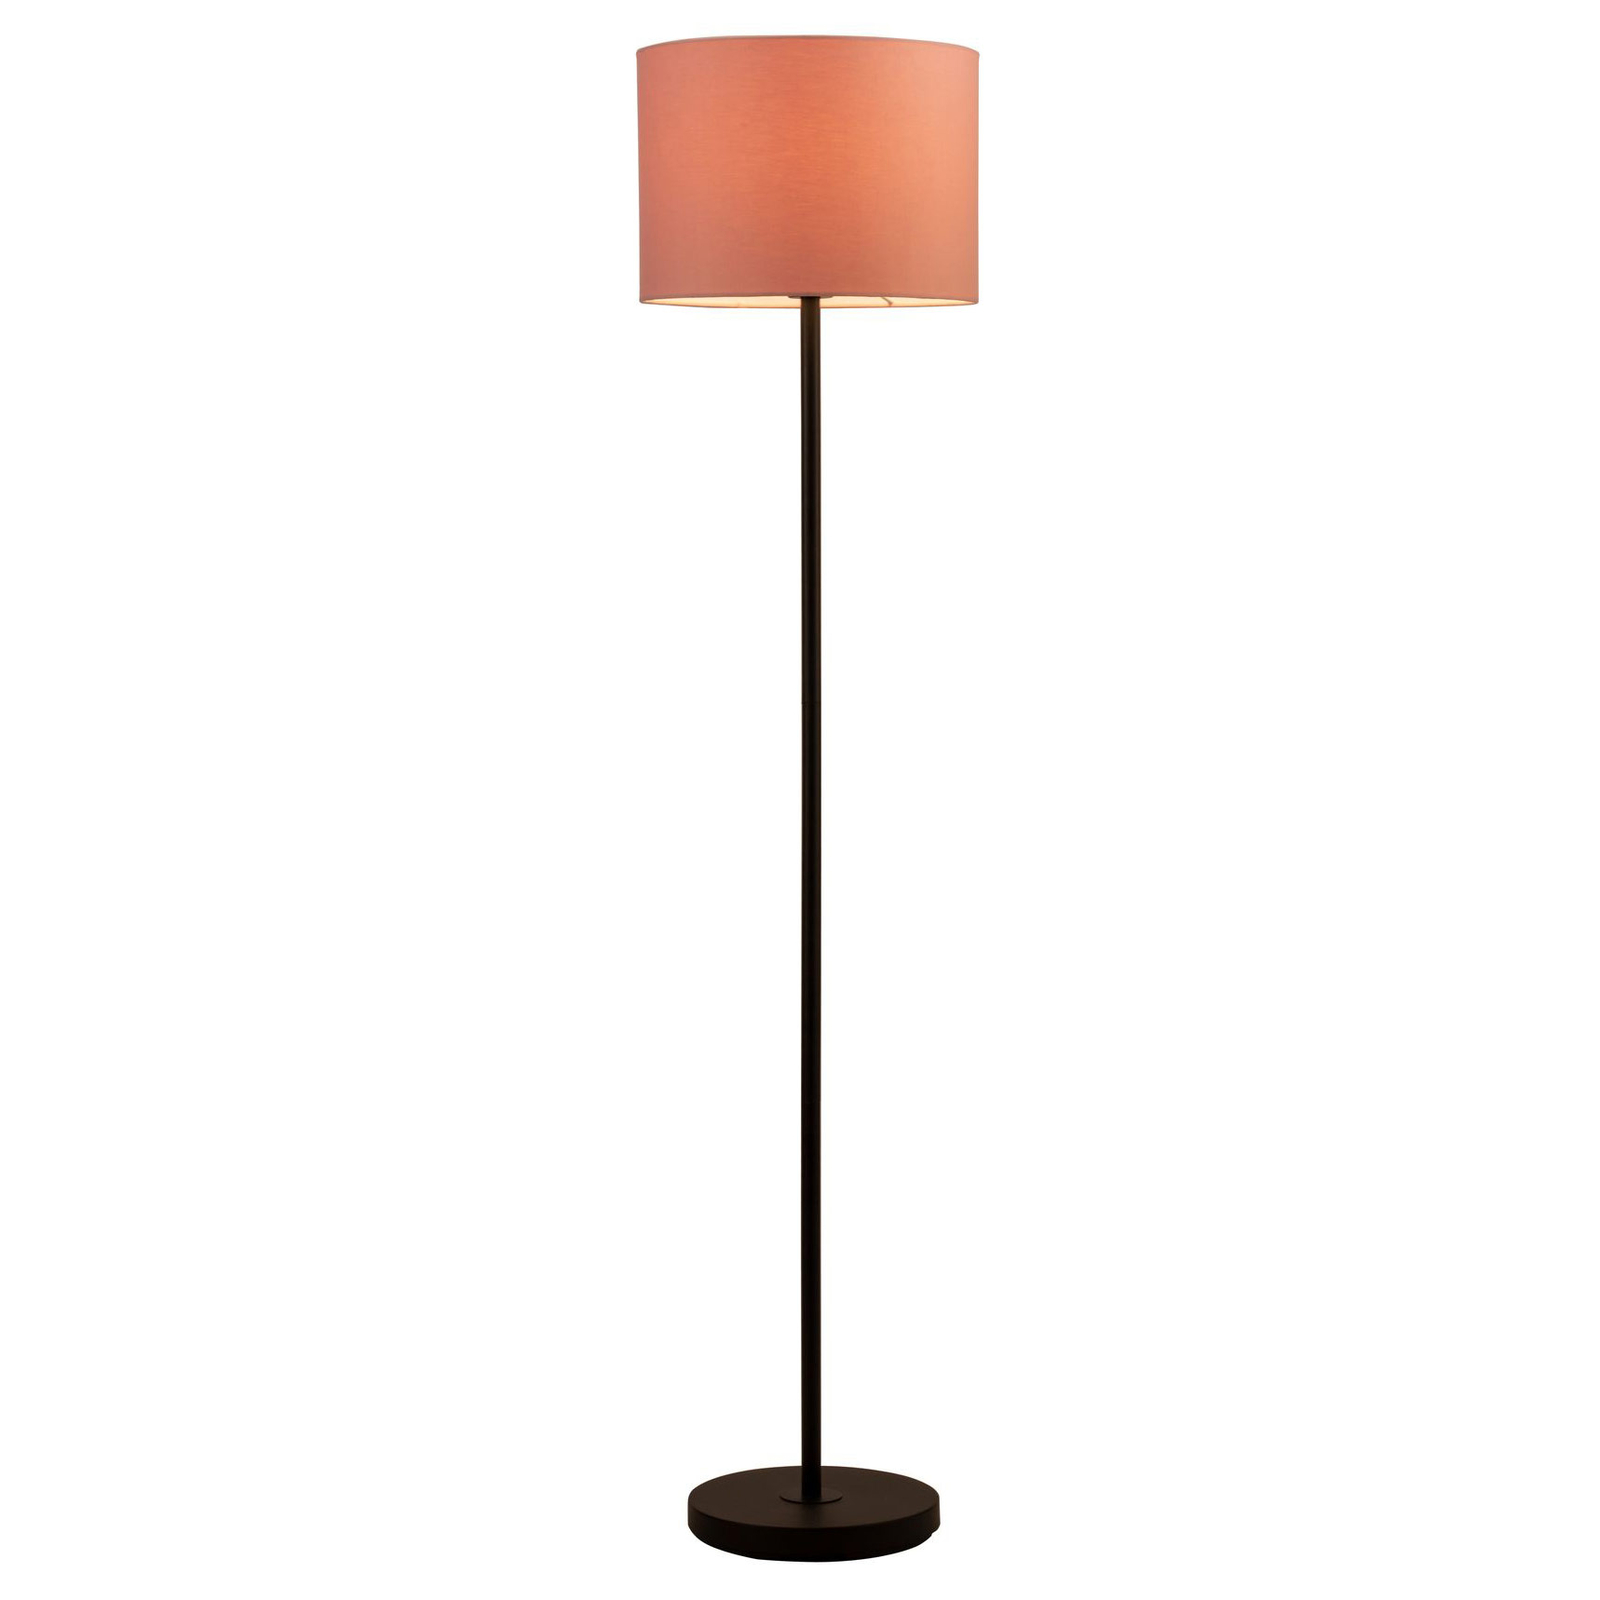 Pauleen Grand Reverie gulvlampe i rosa/svart